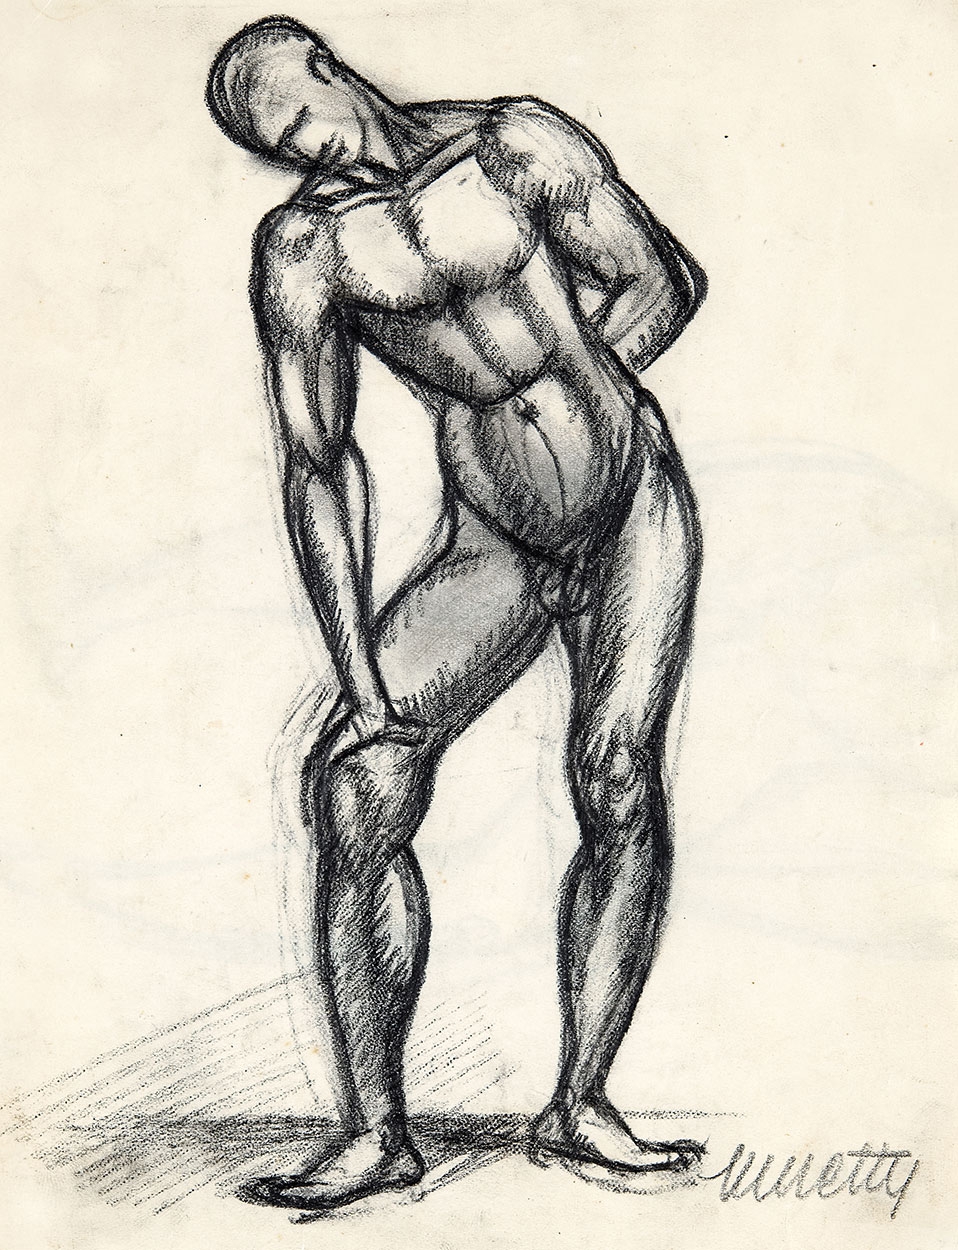 Kmetty János (1889-1975) Male Nude